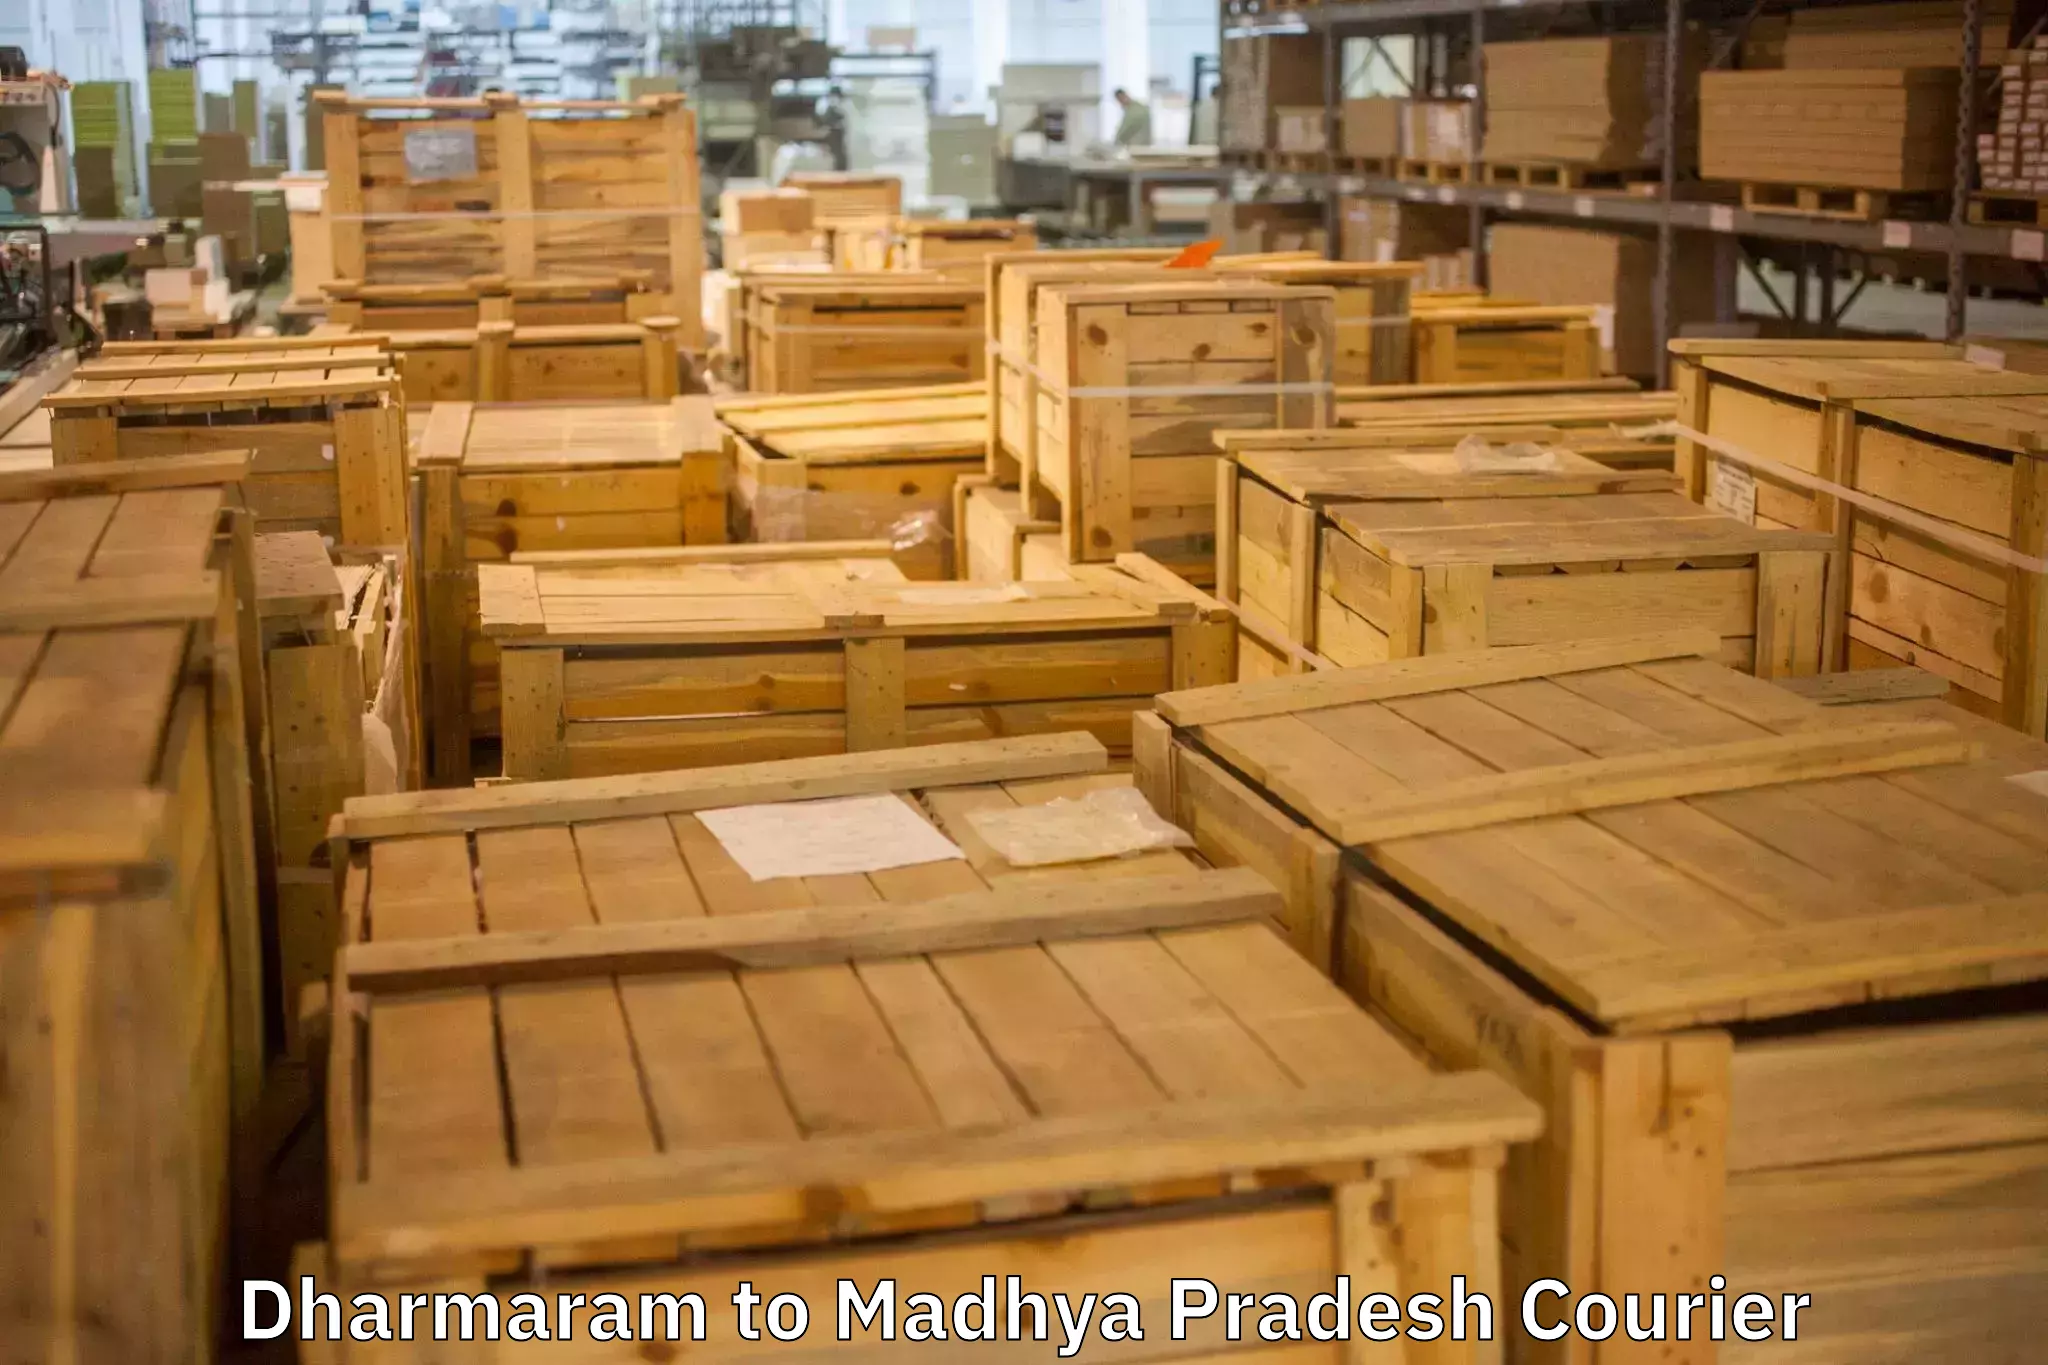 Quality moving company Dharmaram to Shujalpur